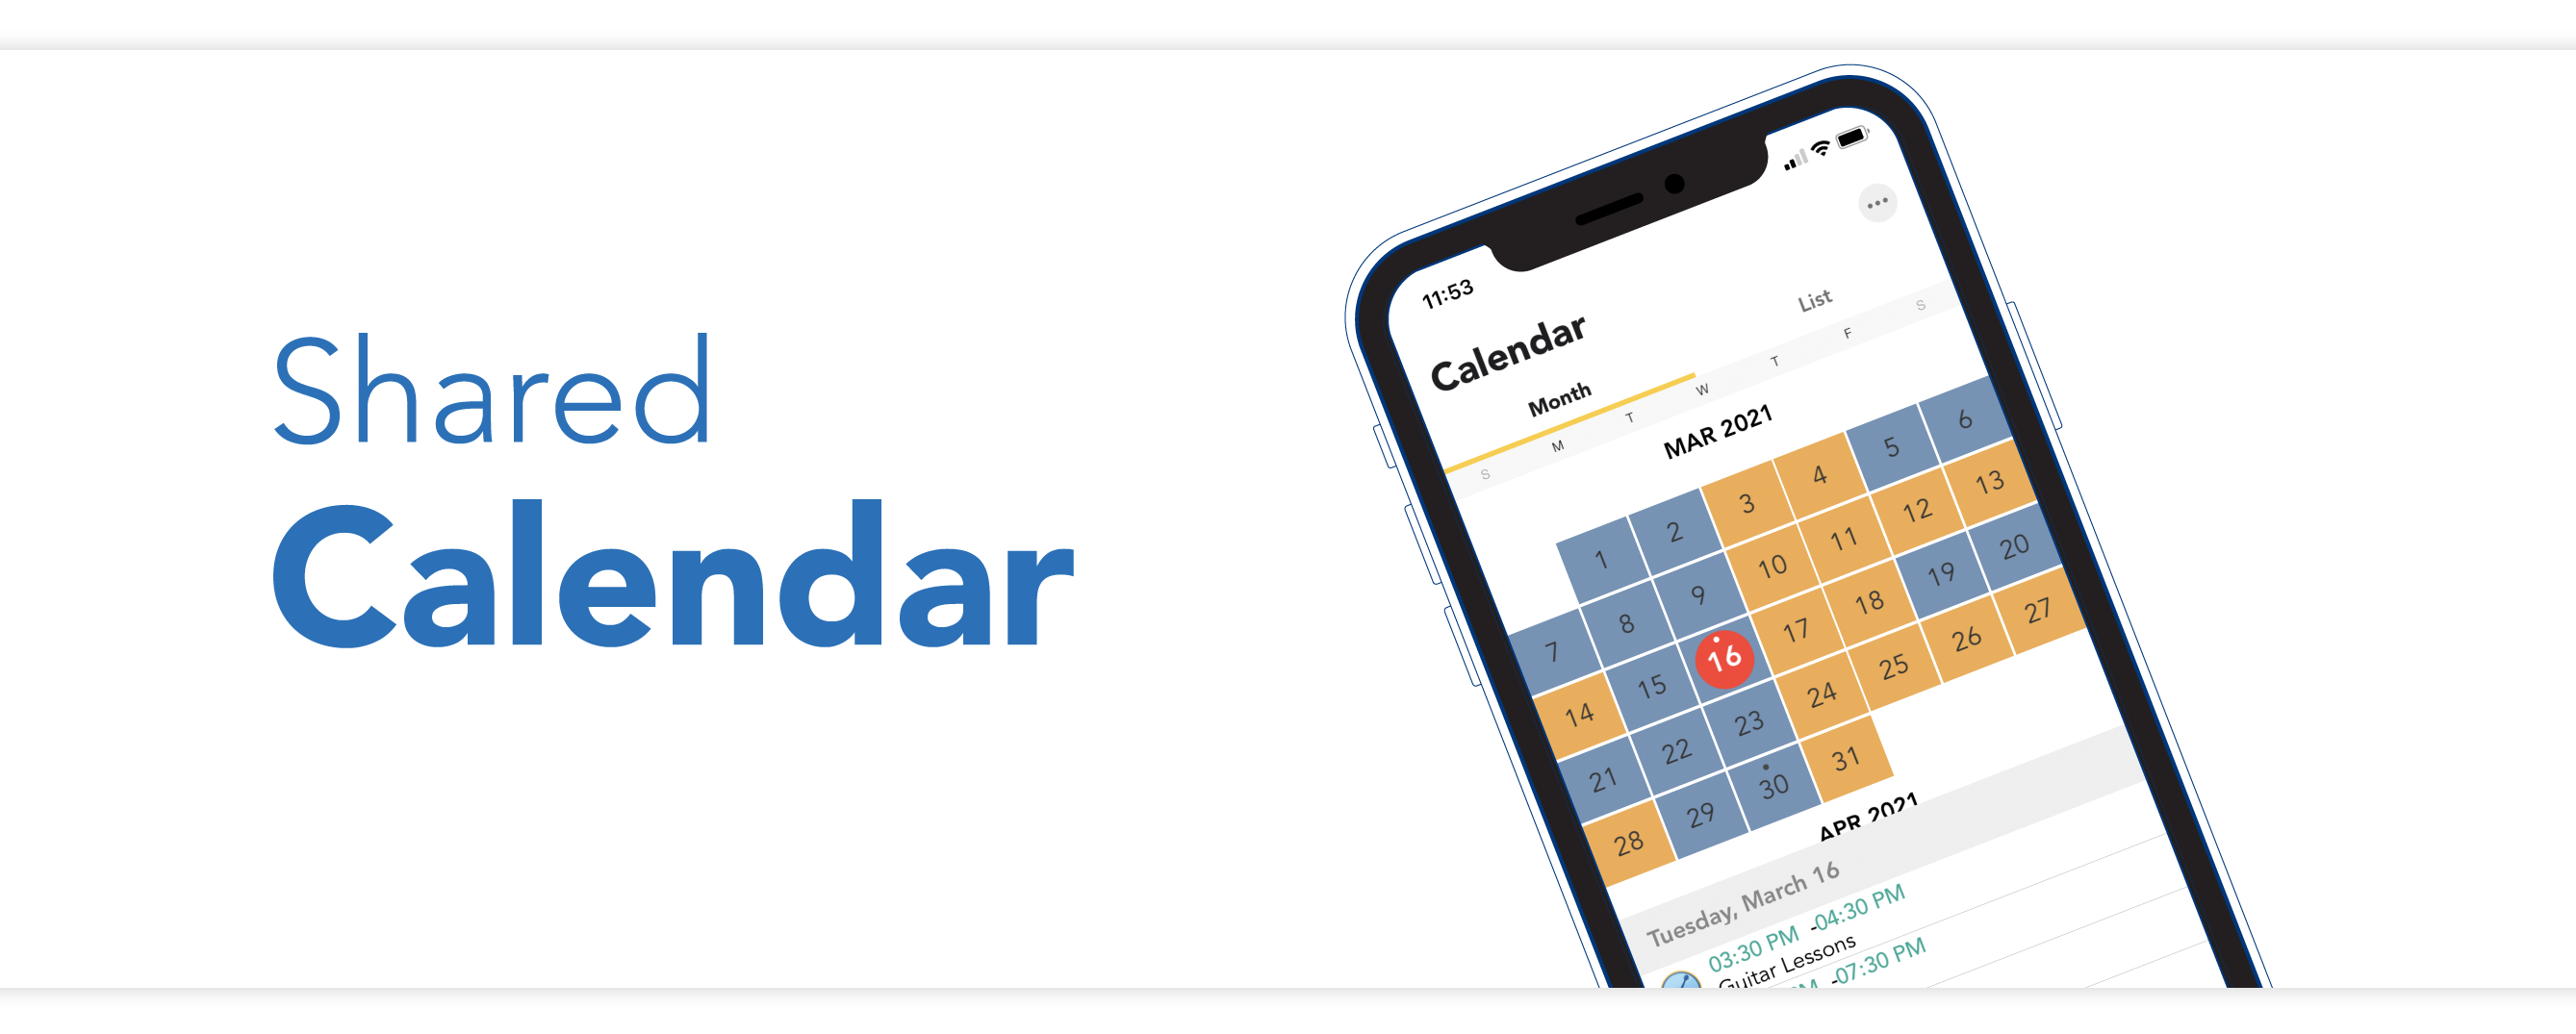 使用OFW移动应用程序上的共享日历检查您的父级时间，计划活动，以及更多。